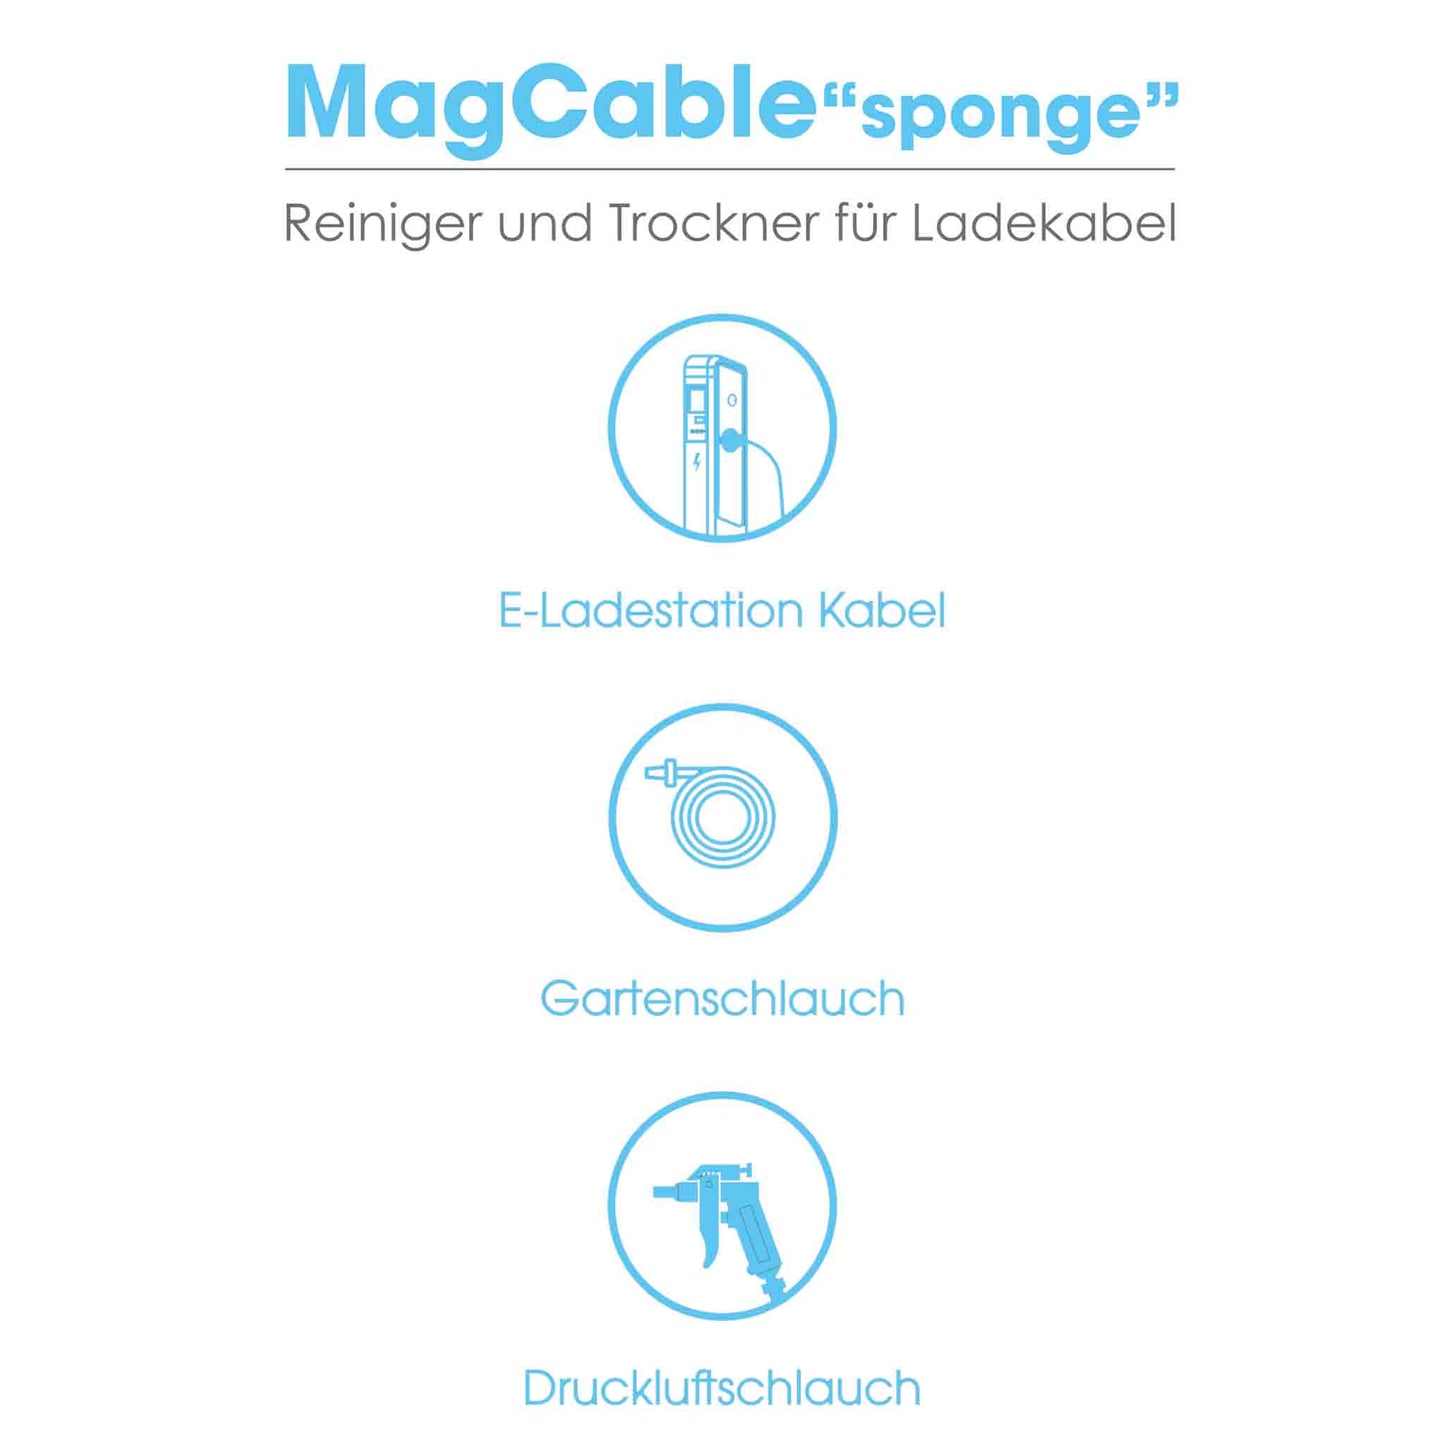 MagCable "sponge" Ladekabel Reiniger